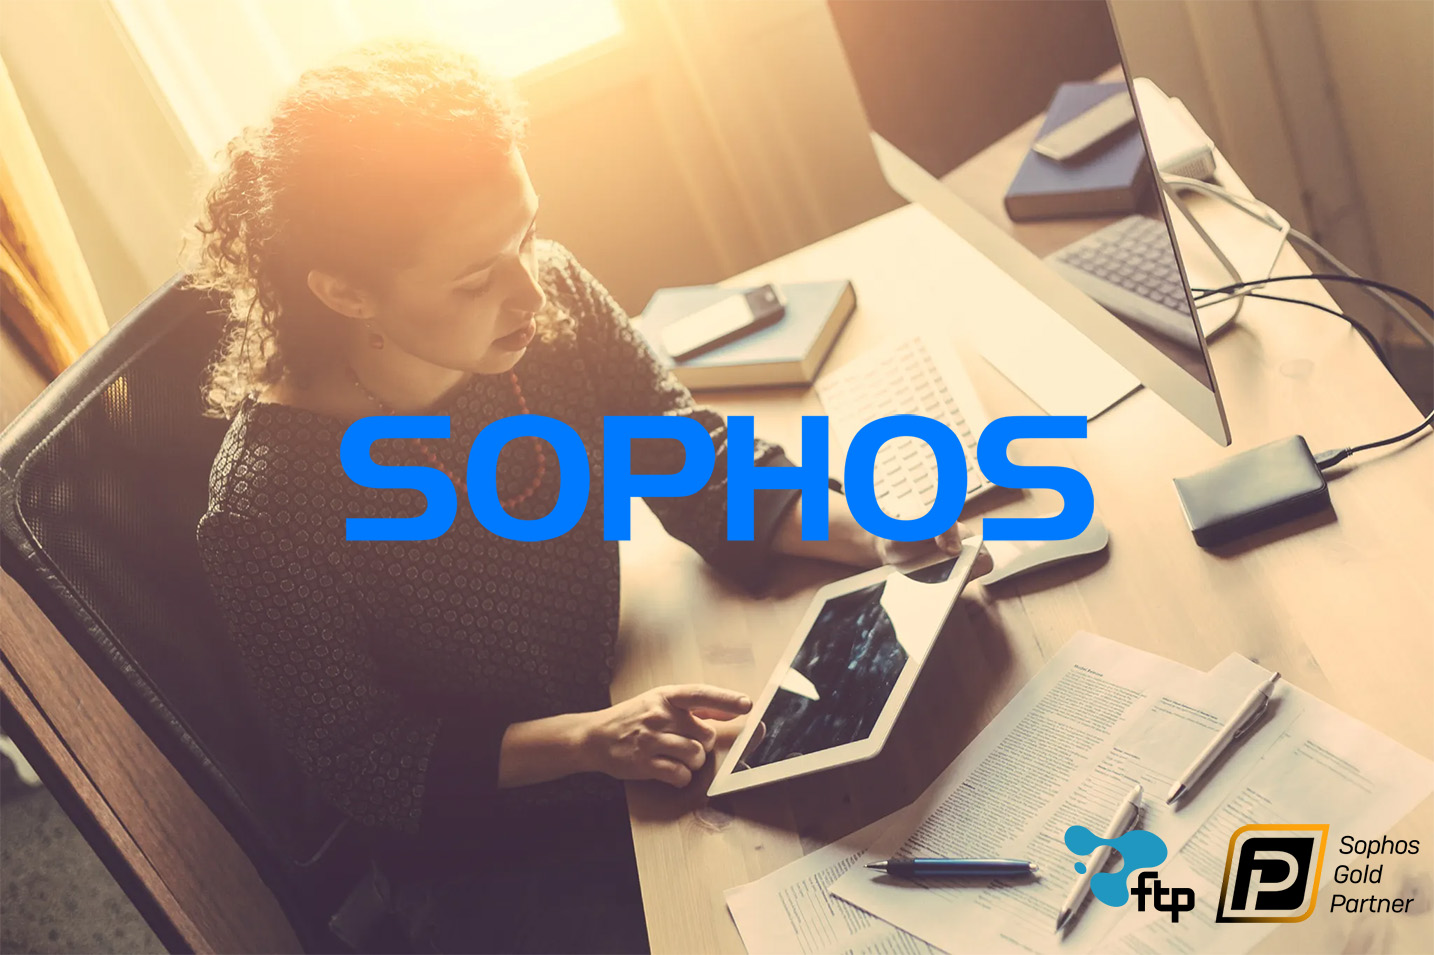 Relatório de Ameaças da Sophos revela que o ransomware ainda é a maior ameaça para PMEs - FTP - Cibersegurança